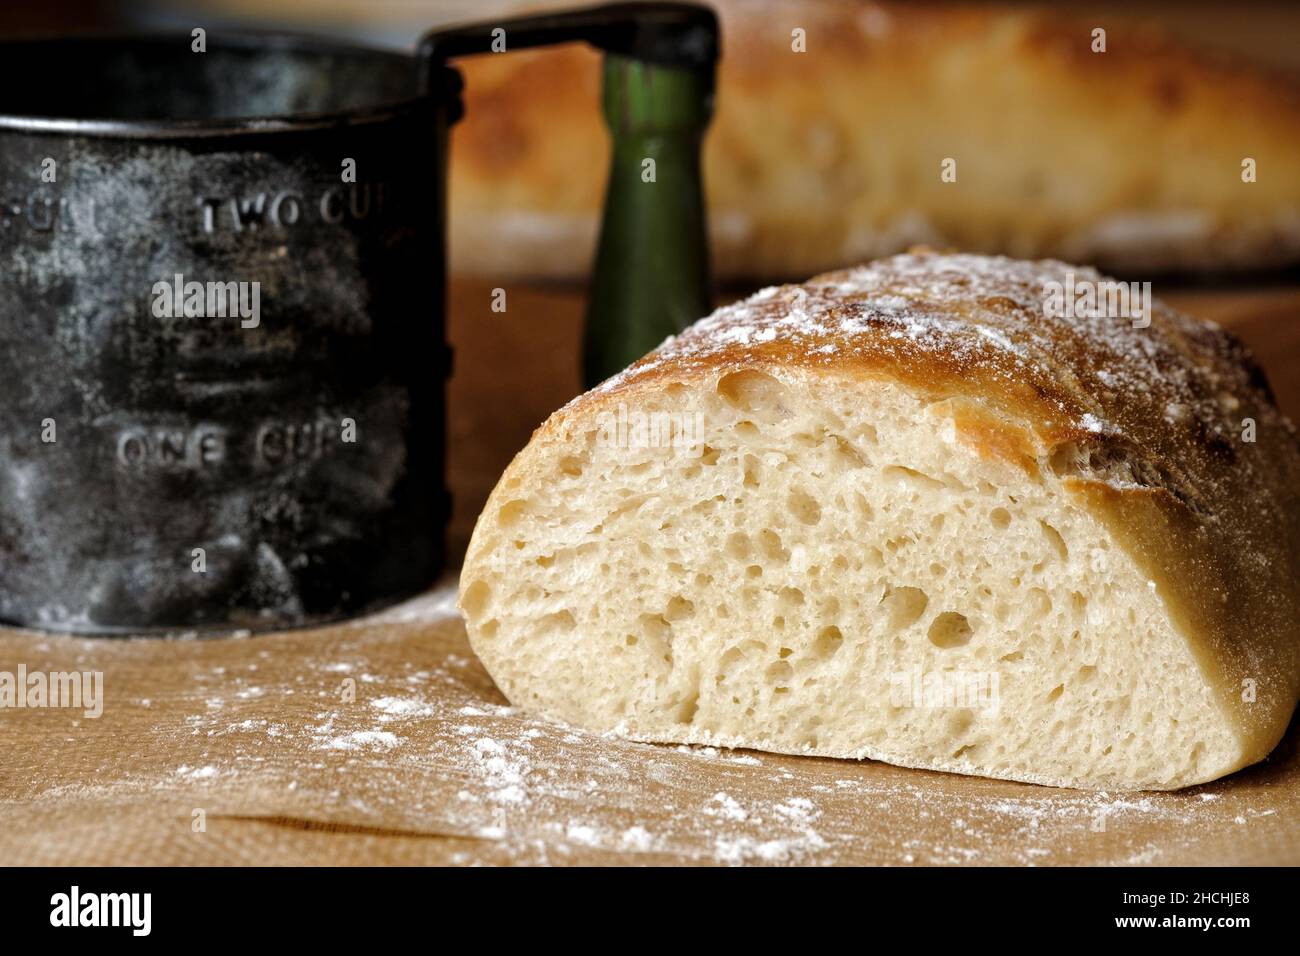 Ein frisch geschnittenes Brot aus hausgemachtem, handwerklichem Weißbrot auf einem Backblech. Der Mehlsichter, der zum Stauben des Brotes verwendet wurde, befindet sich im Hintergrund. Stockfoto